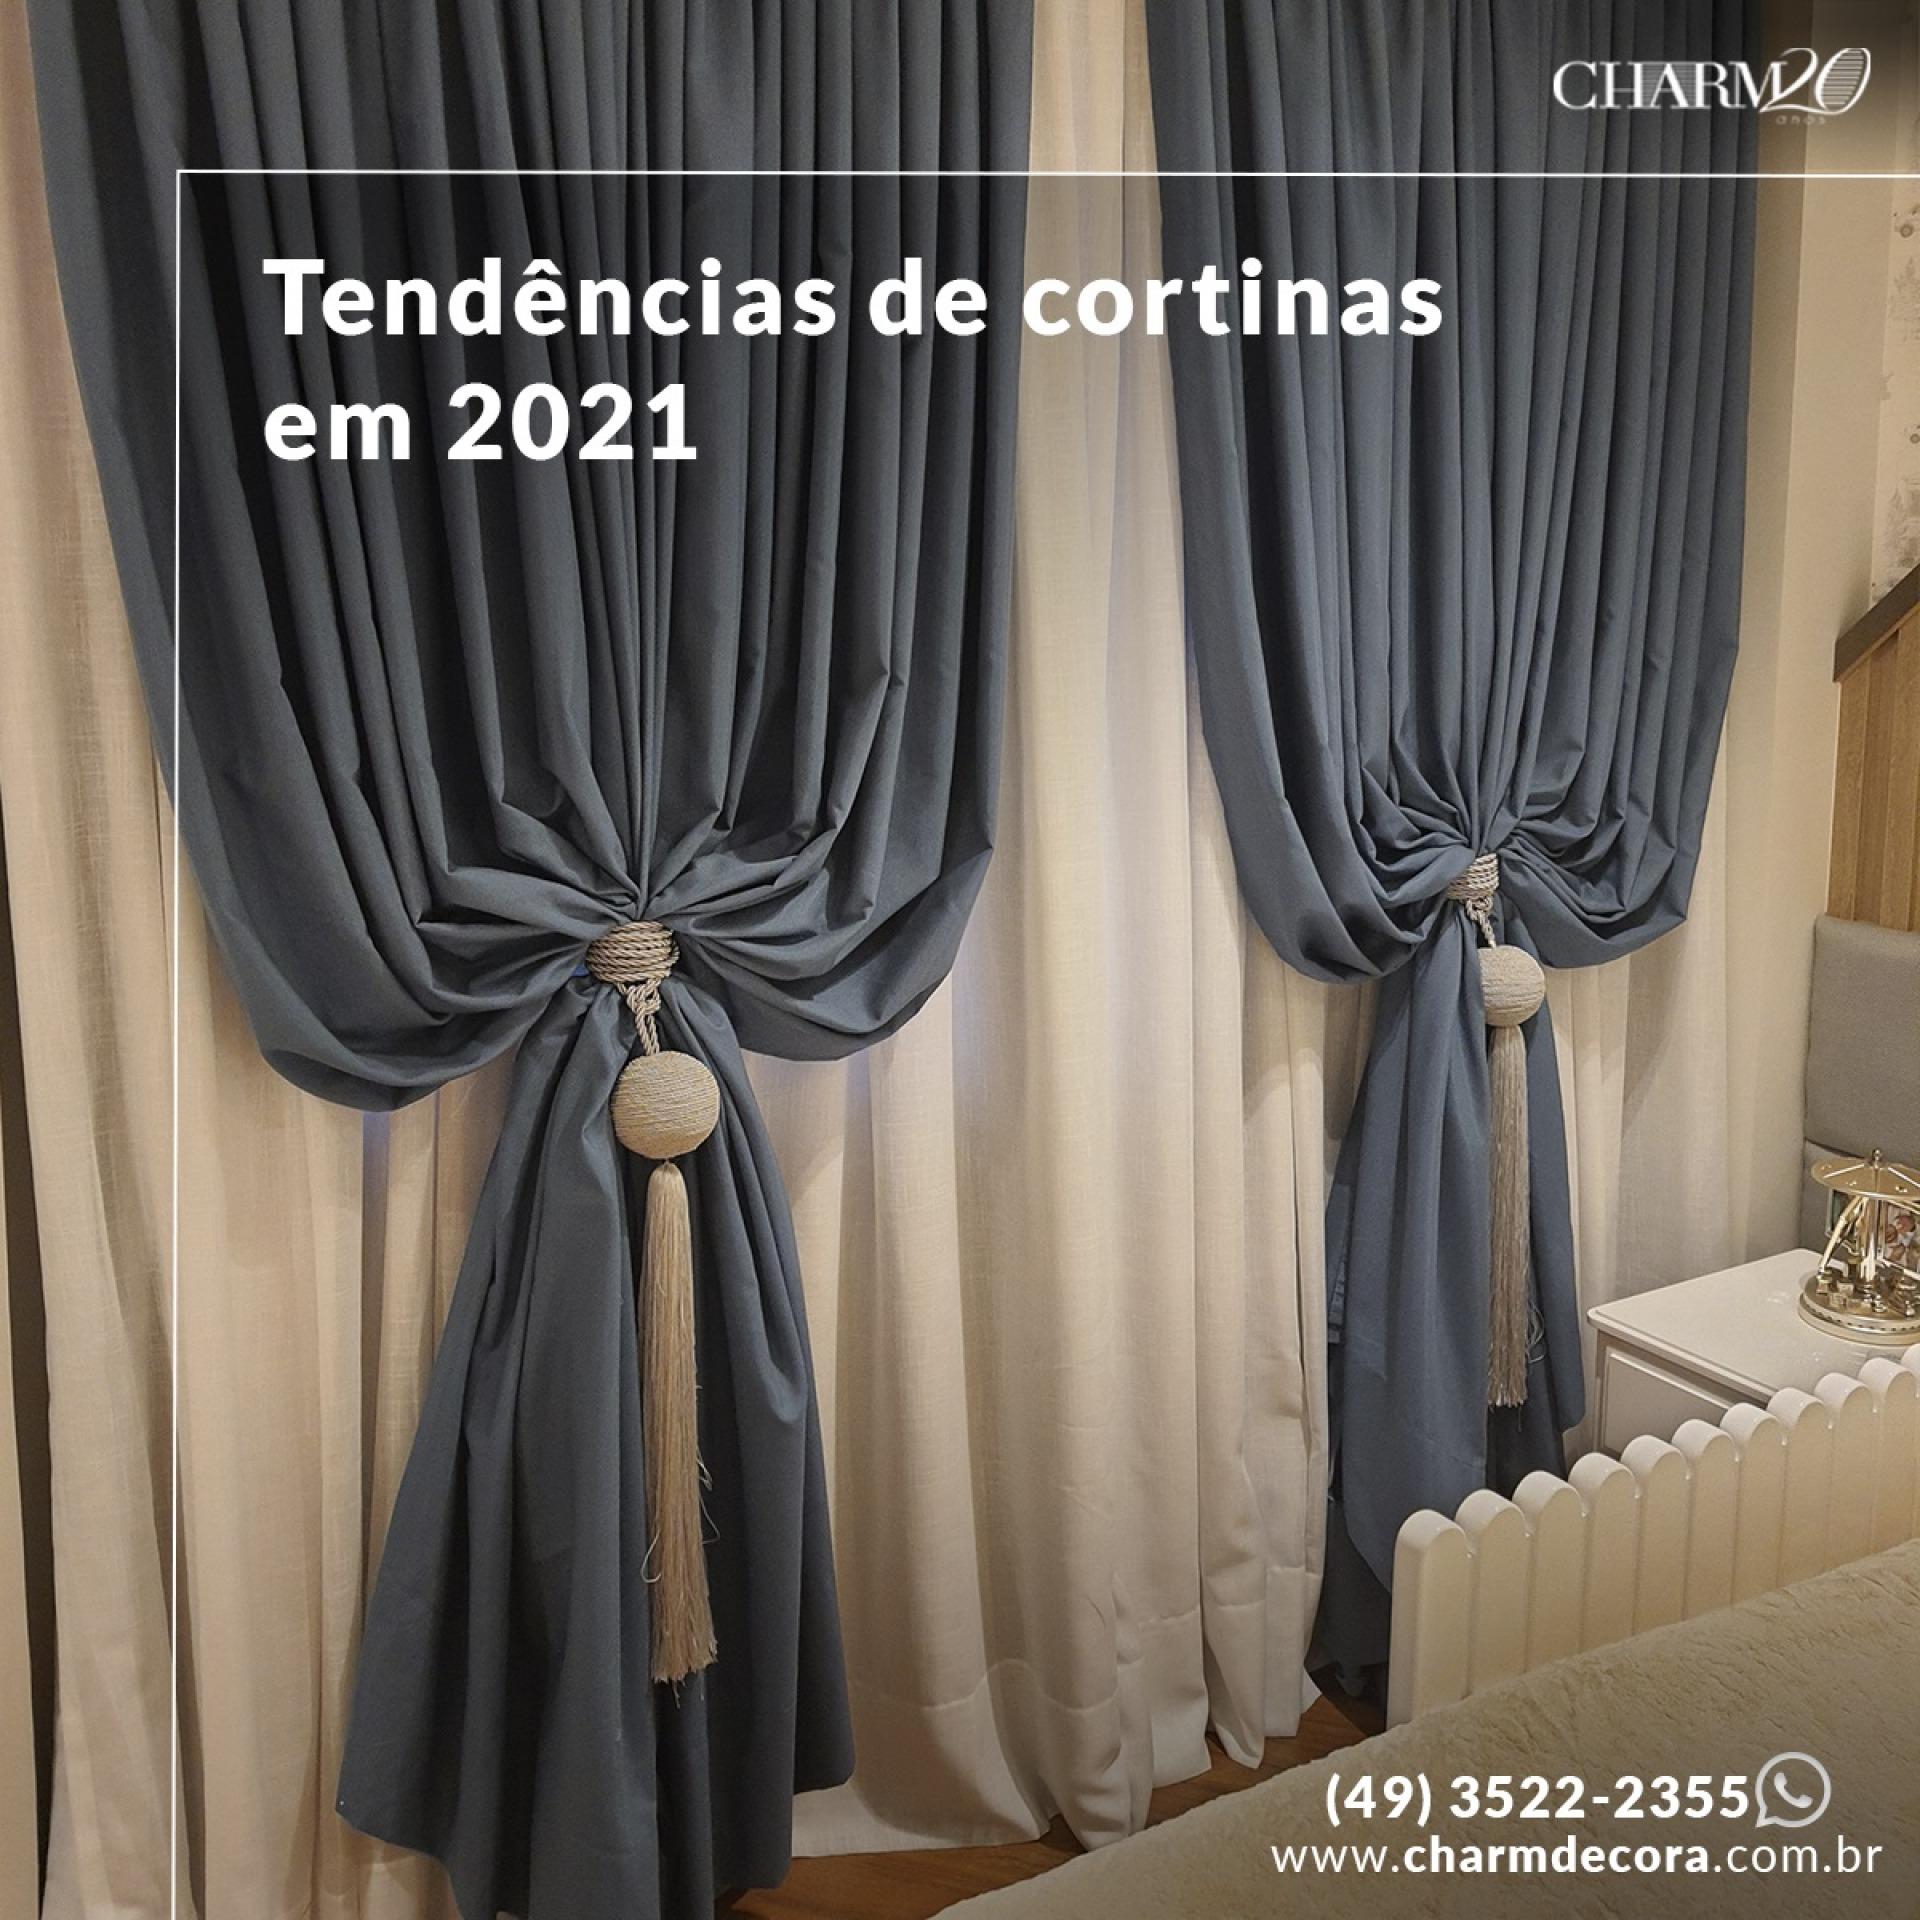 Tendências de cortinas em 2021!